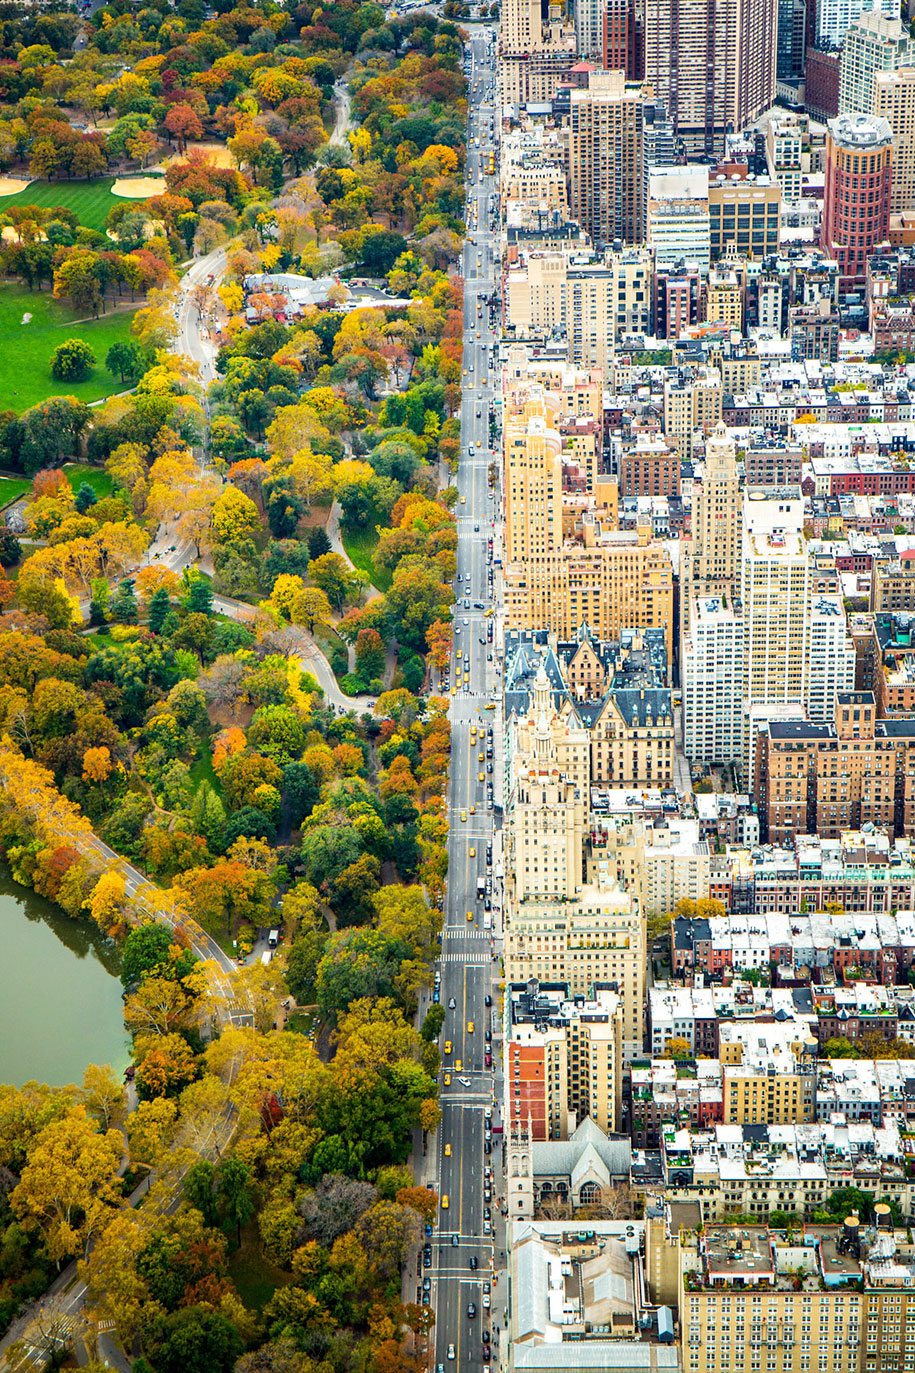 Τιμητική Διάκριση, κατηγορία Πόλεις: «Το χώρισμα». Αεροφωτογραφία τραβηγμένη μέσα από ελικόπτερο που δείχνει το Σέντραλ Παρκ και τις διαφορετικές αρχιτεκτονικές που επικρατούν στο Μανχάταν της Νέας Υόρκης